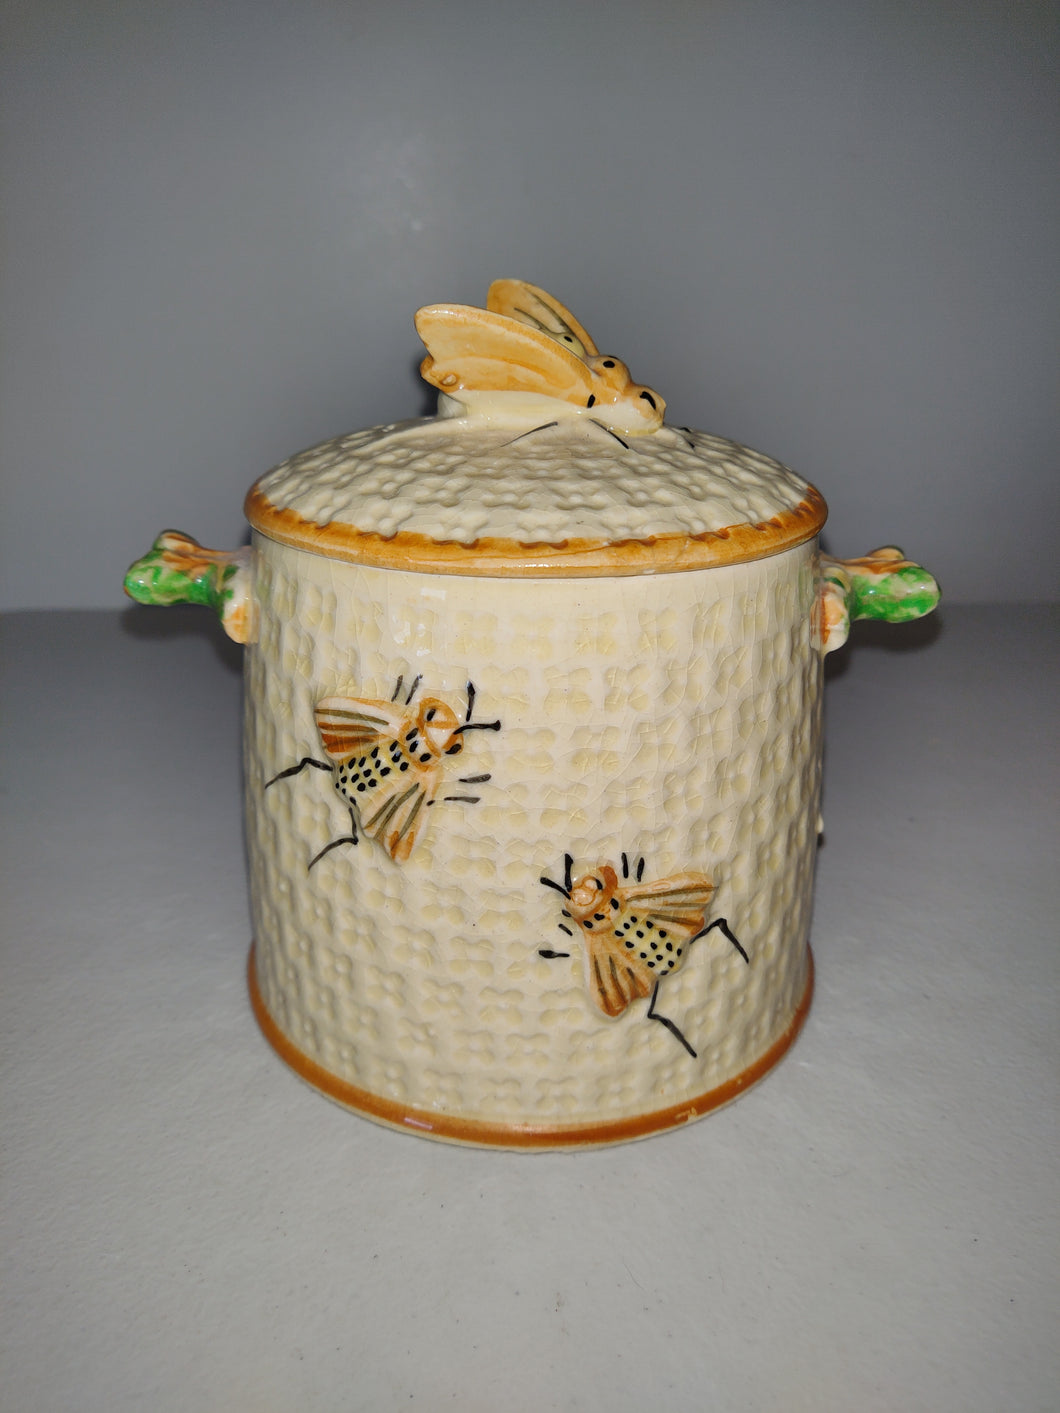 Honeybee Jar, Canister, Cookie Jar